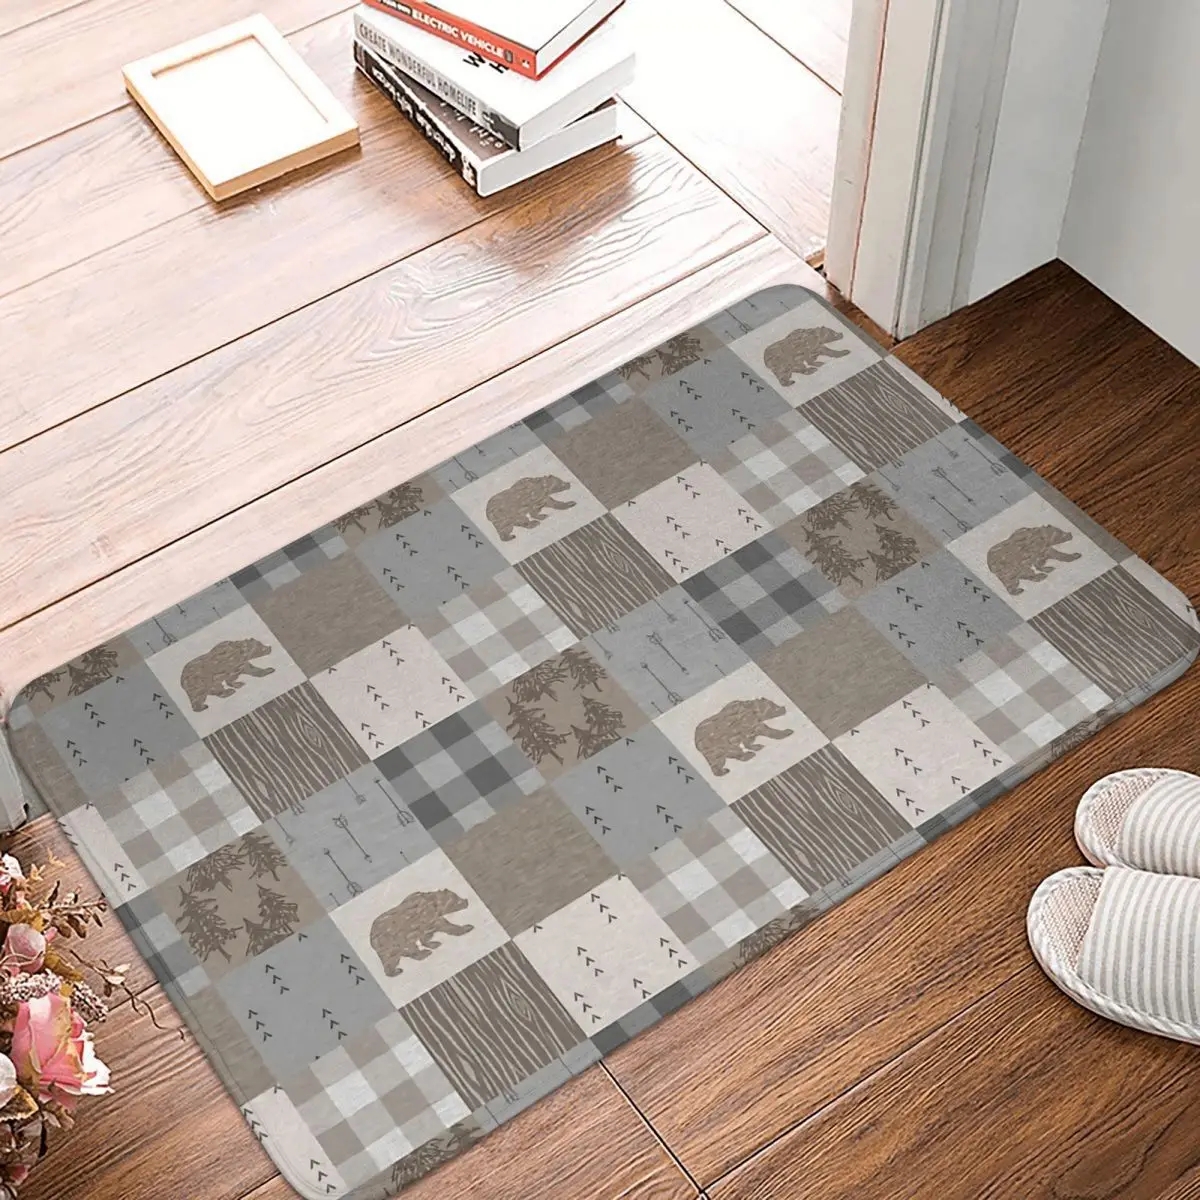 דפוס אנטי להחליק שטיחון למטבח שטיח הדוב טלאים הרצפה שטיח דלת הכניסה השטיח לעיצוב הבית